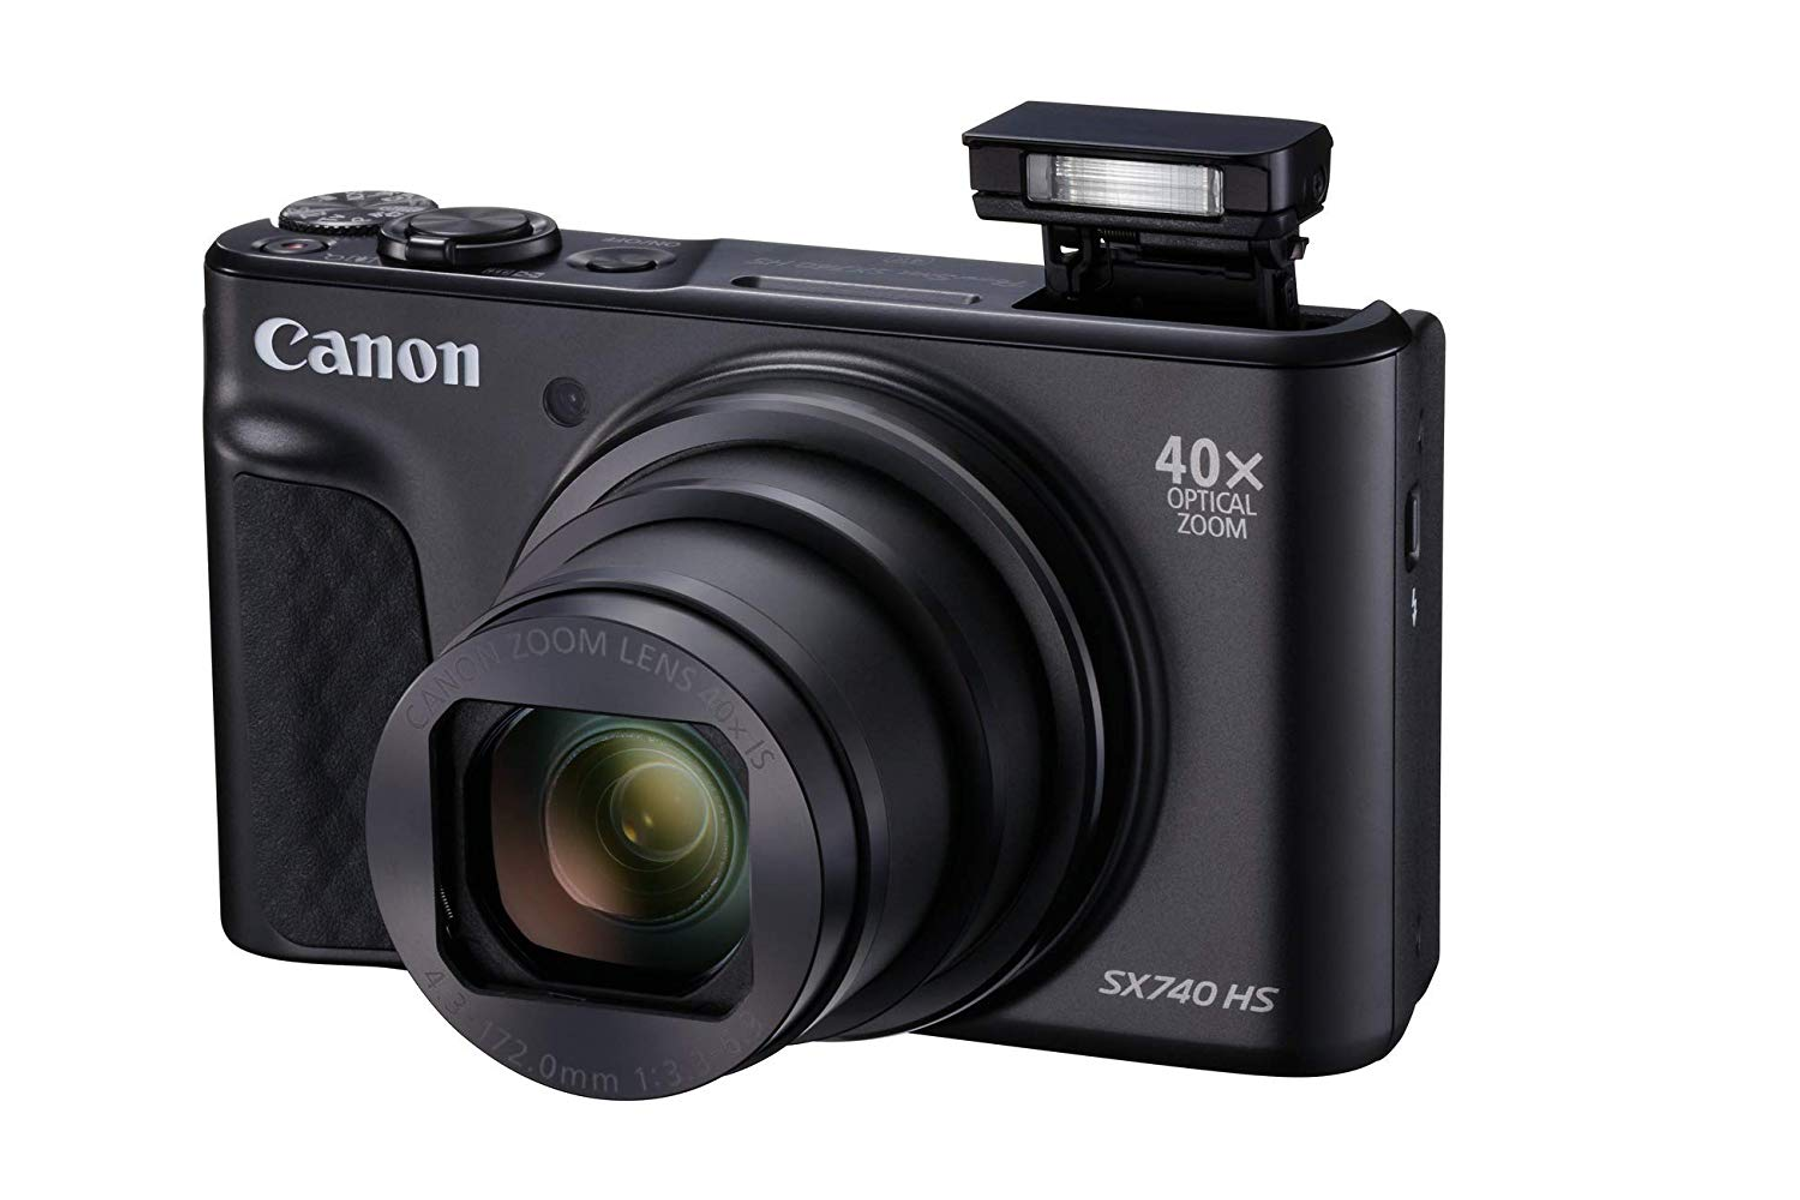 CANON (TFT), Digitalkamera LCD 740 opt. 40fach POWERSHOT WLAN- Schwarz, SX Zoom, HS